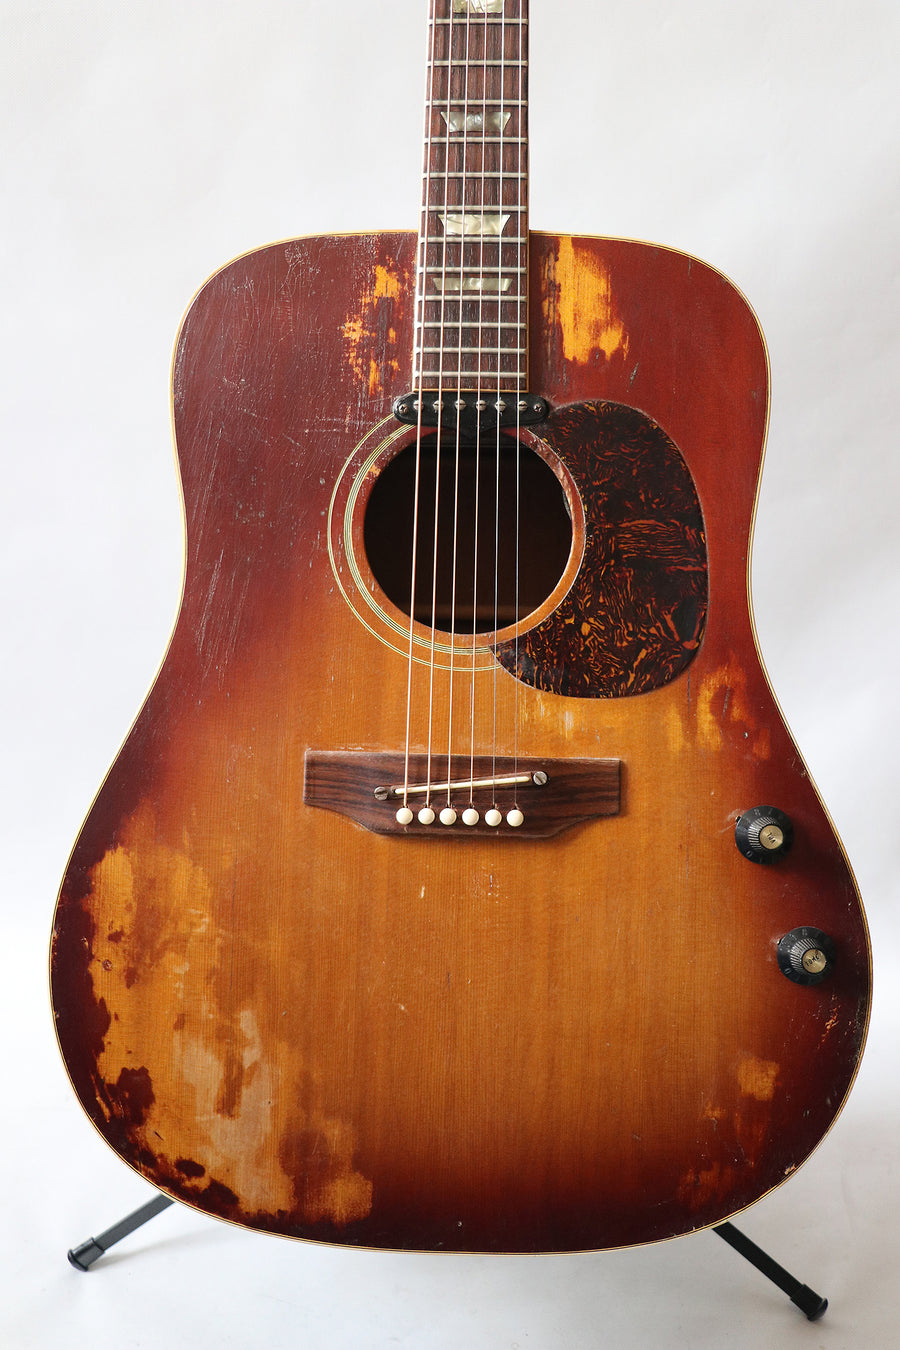 Gibson 160e 1969